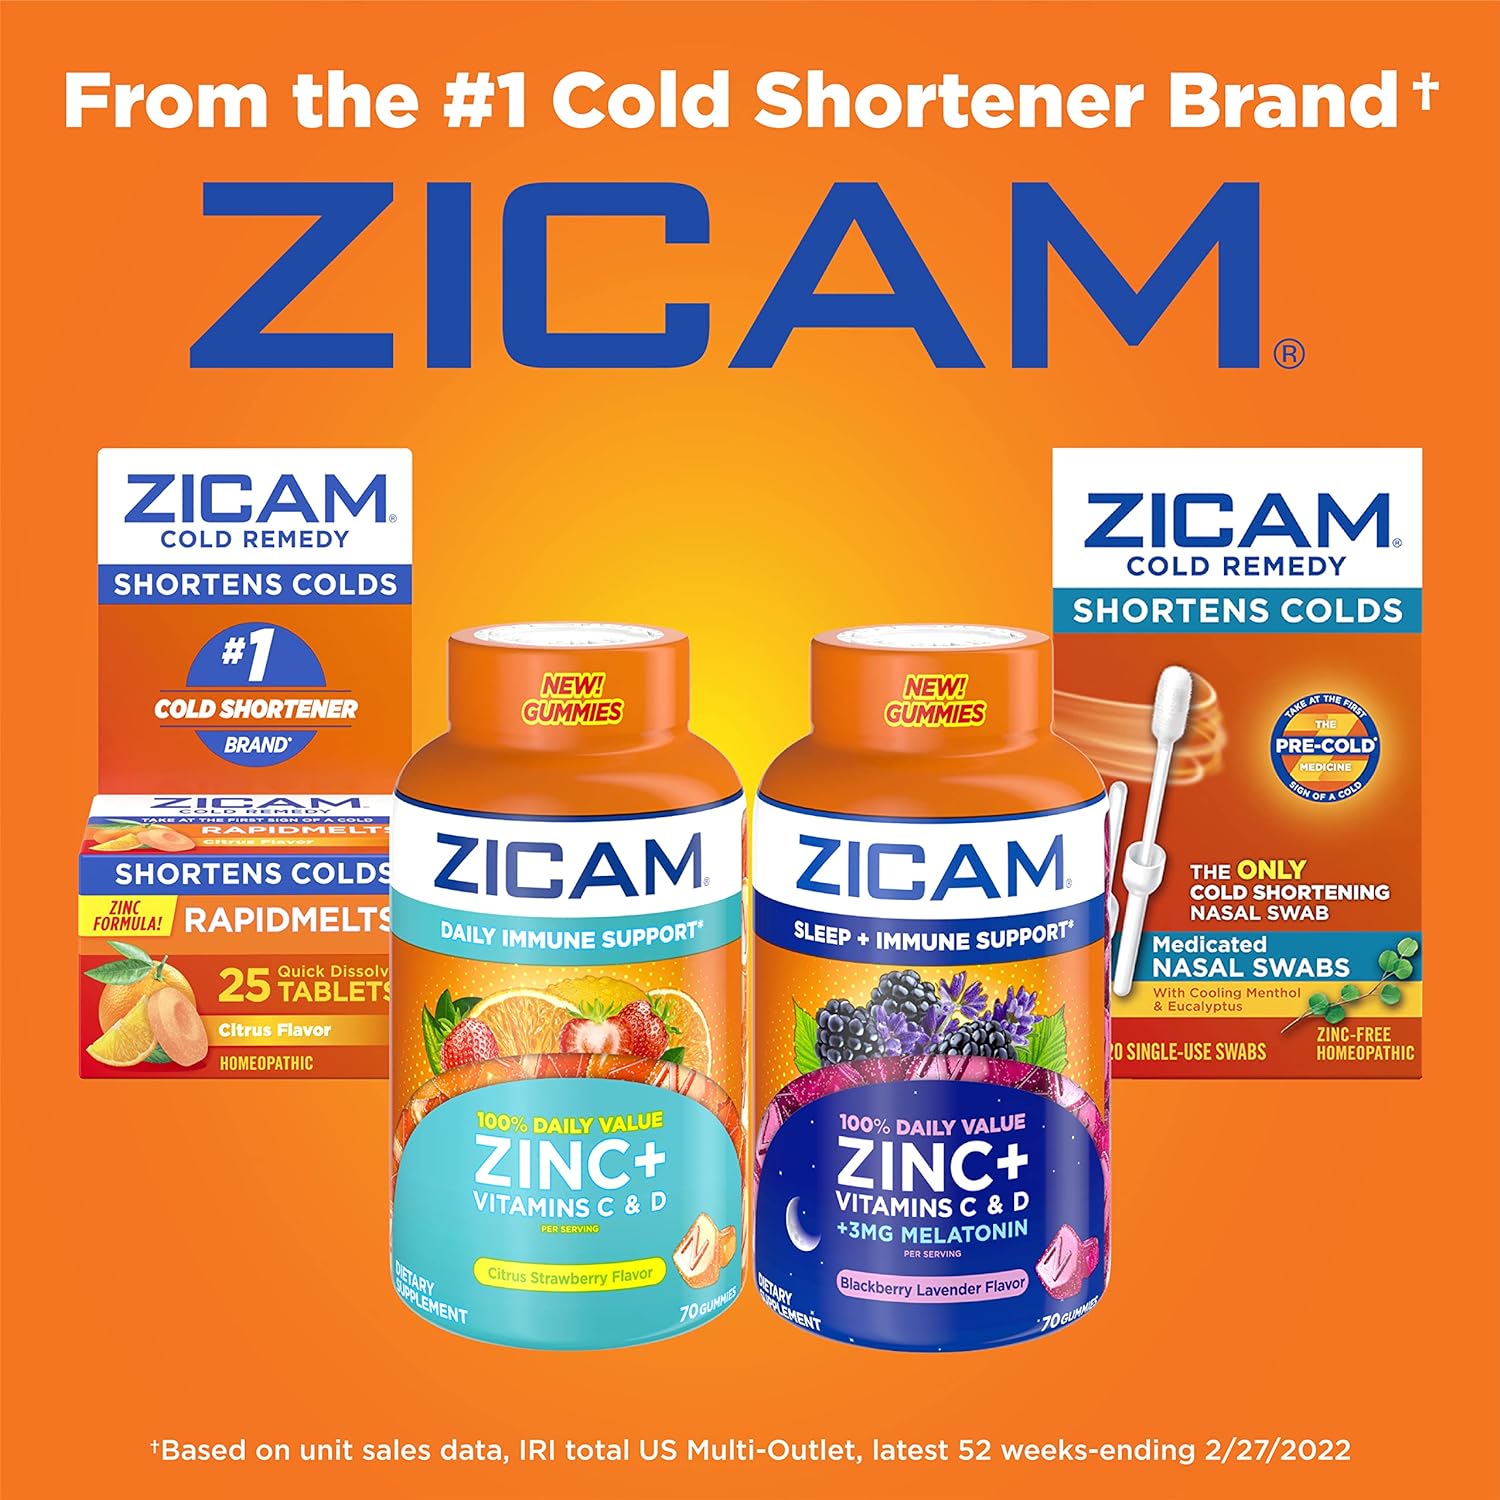 Zicam Gomitas Inmunológicas: Refuerza tu Salud con Vitamina C y Zinc. ¡Protégete Ahora!